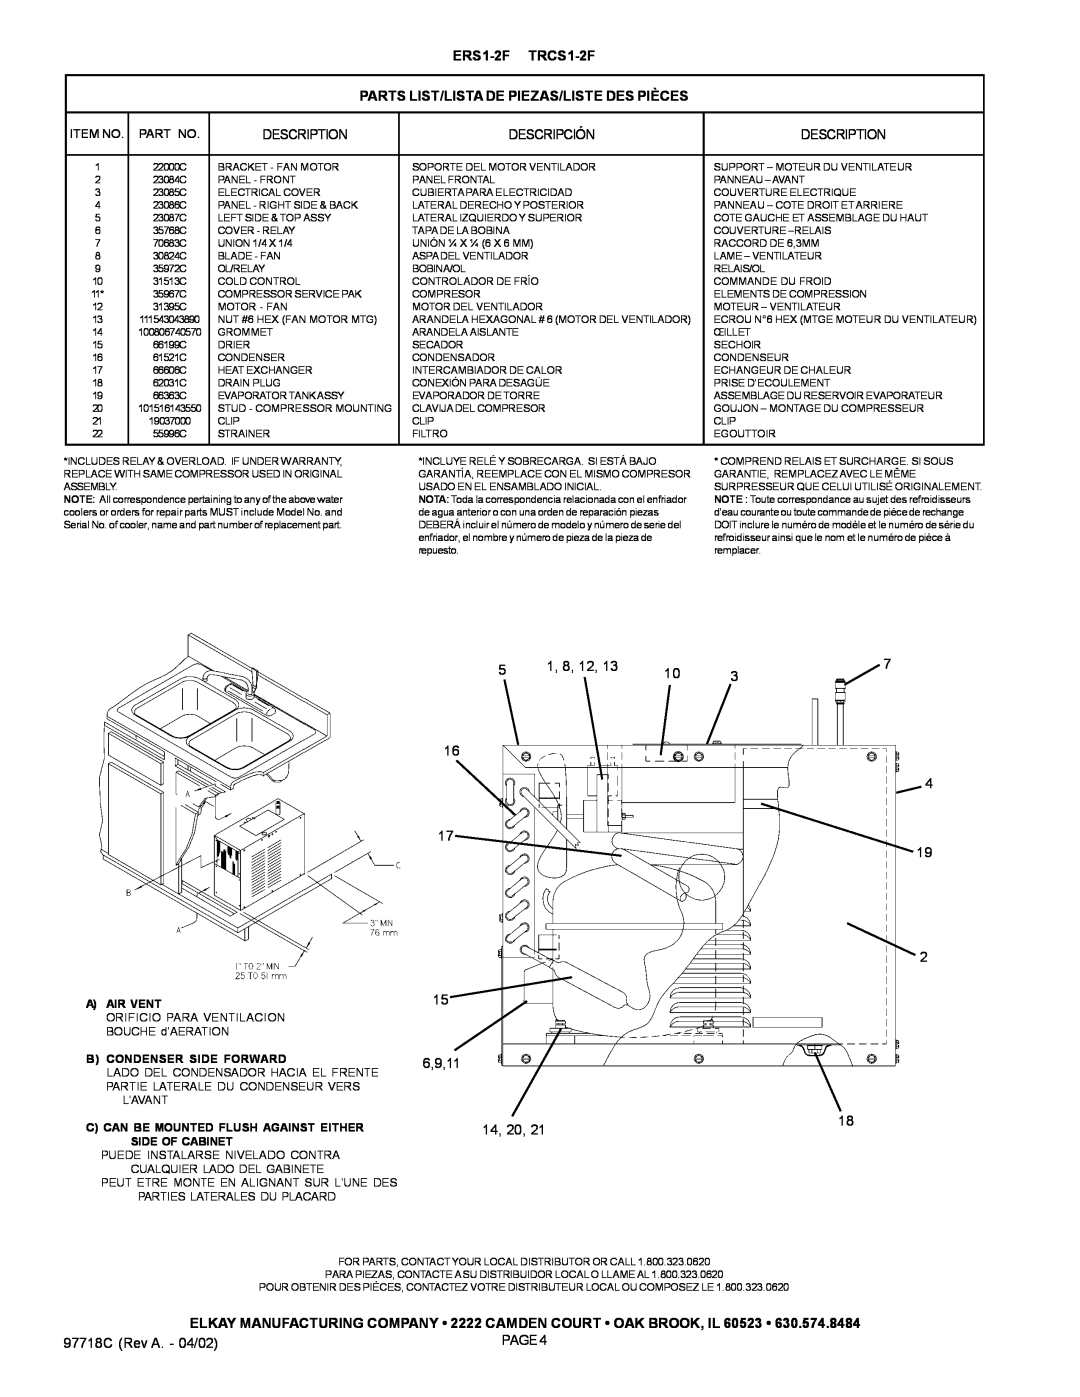 Elkay manual ERS1-2F TRCS1-2F, Parts List/Lista De Piezas/Liste Des Pièces 